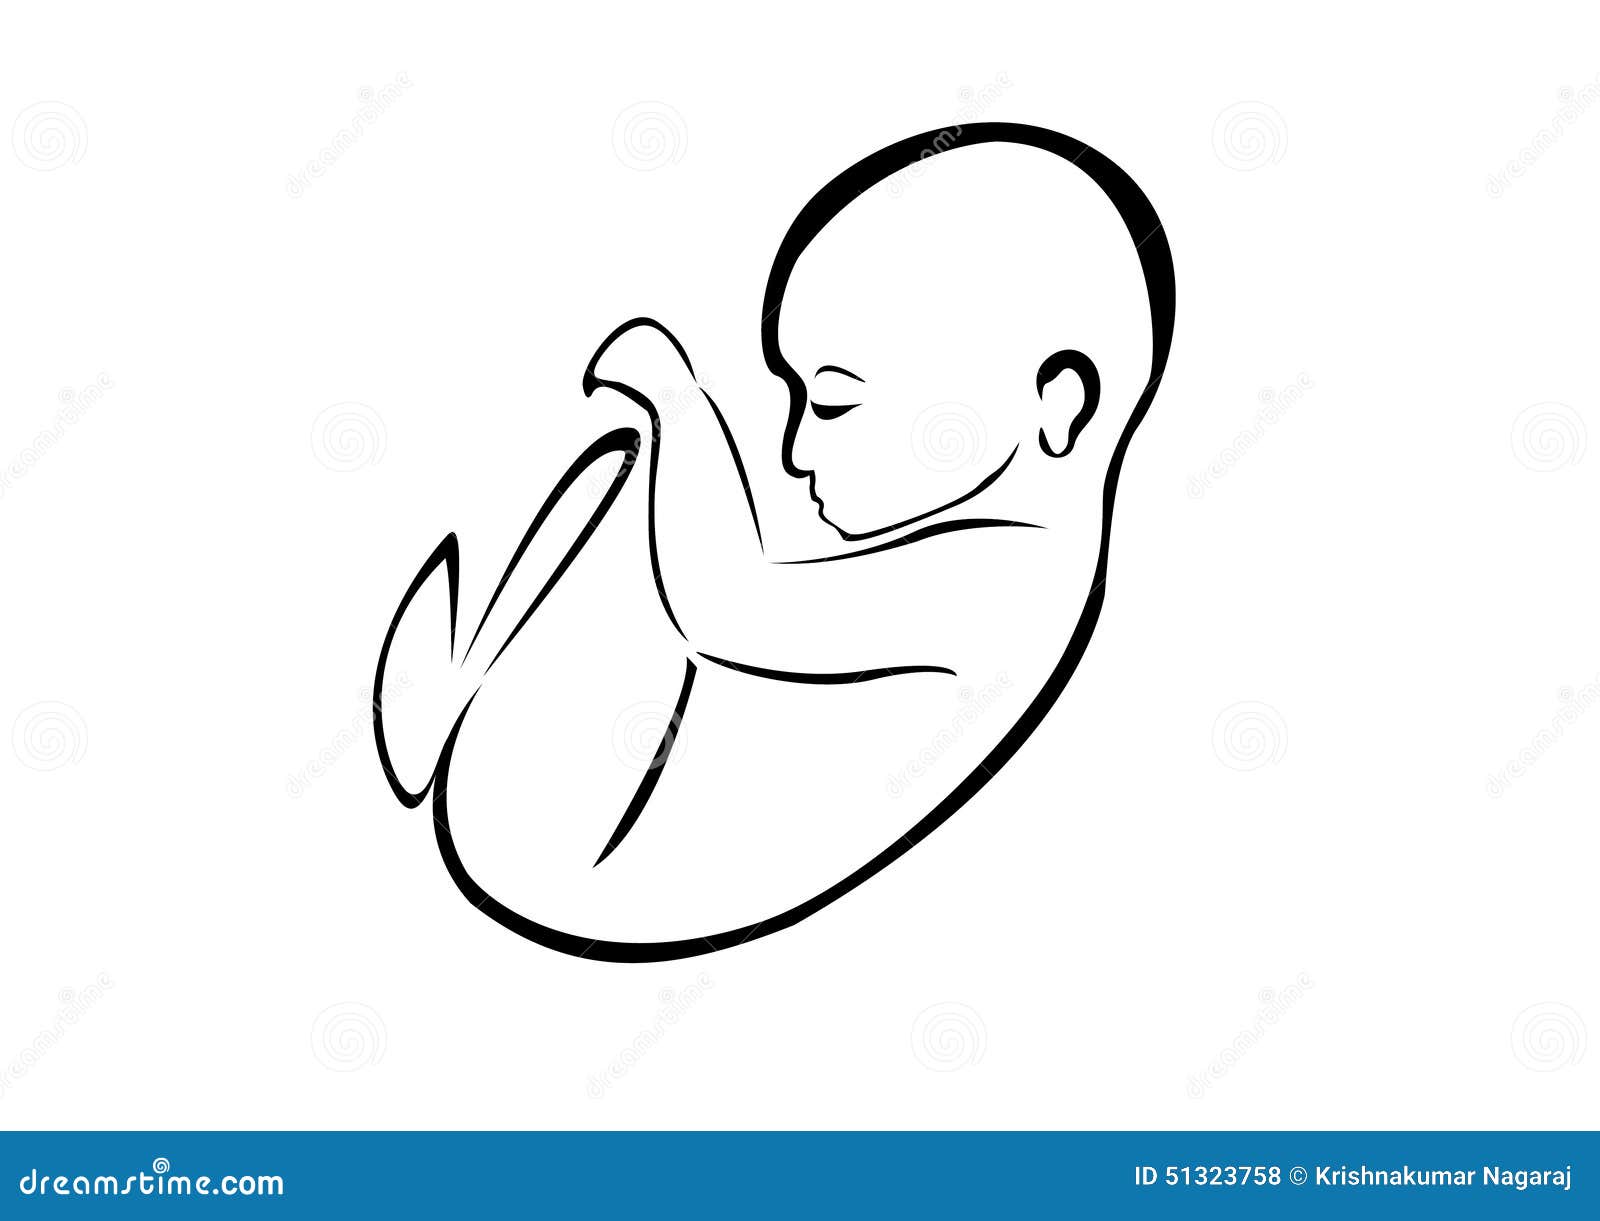 彩超三个月男胎儿图片-图库-五毛网